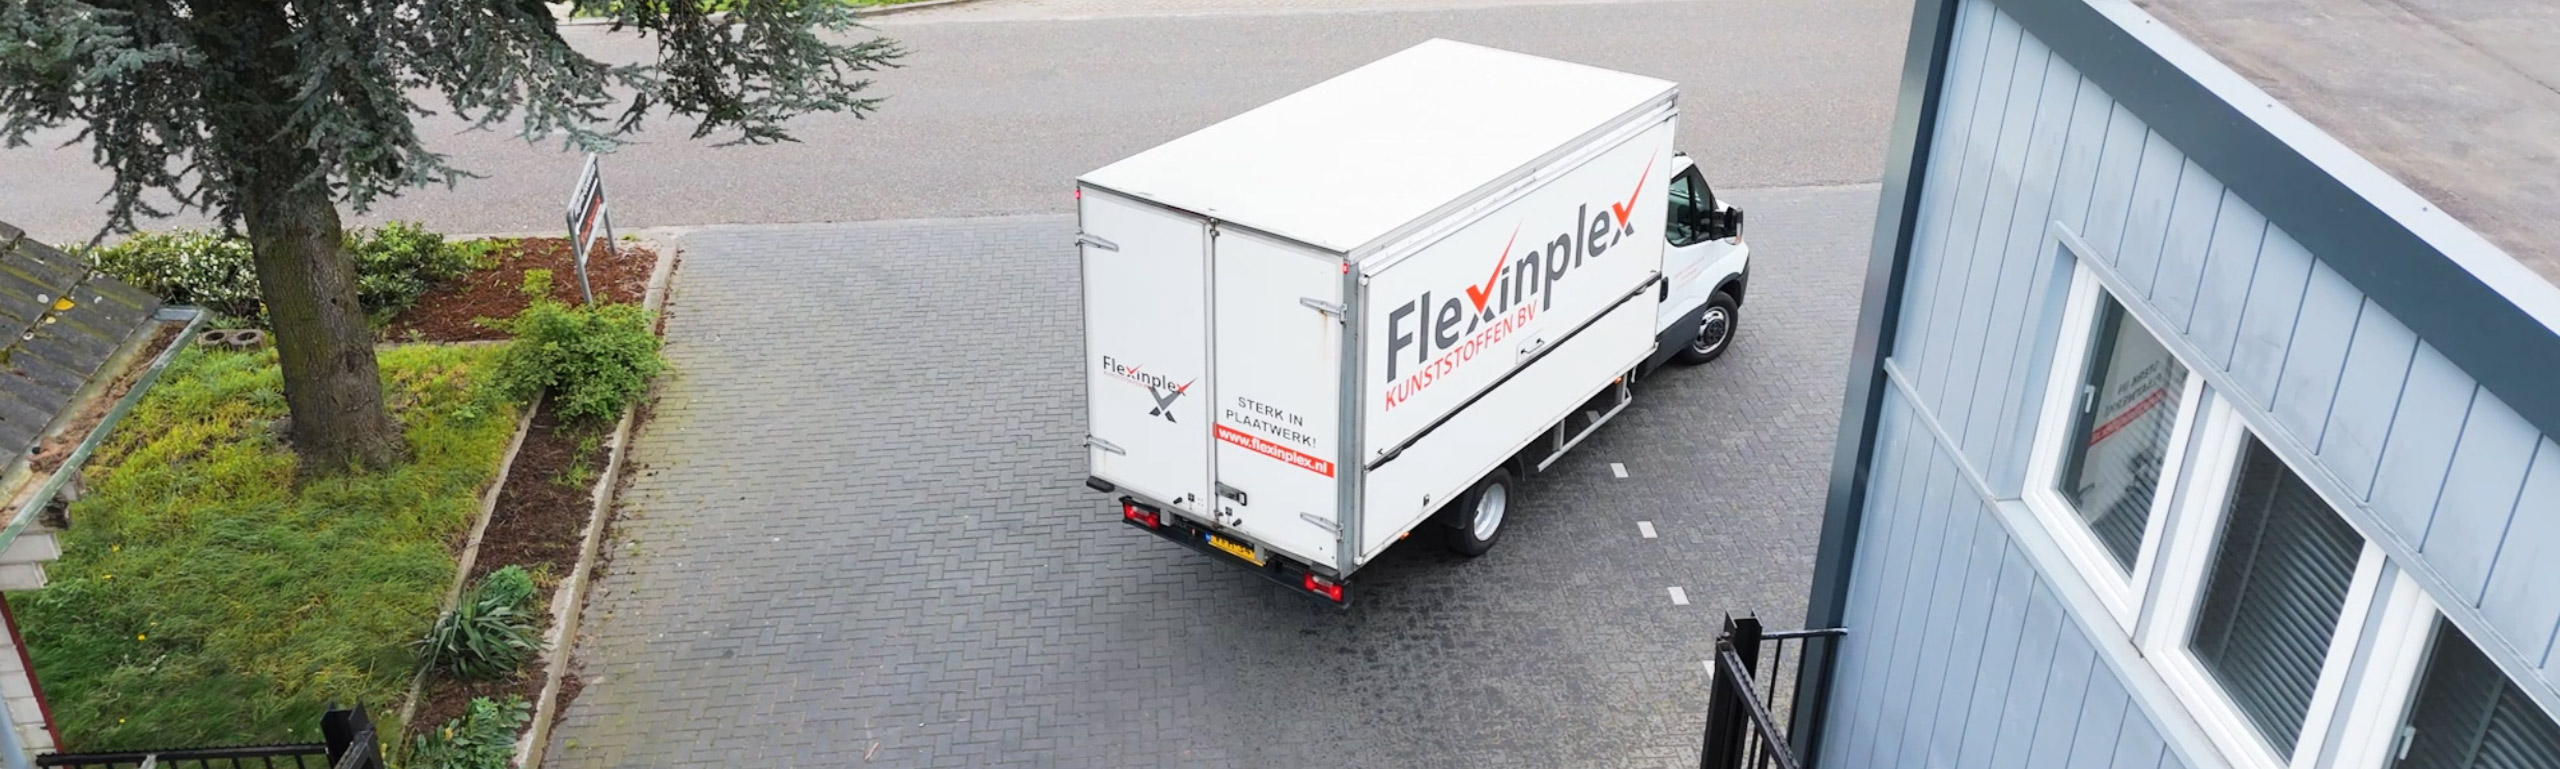 Flexinplex